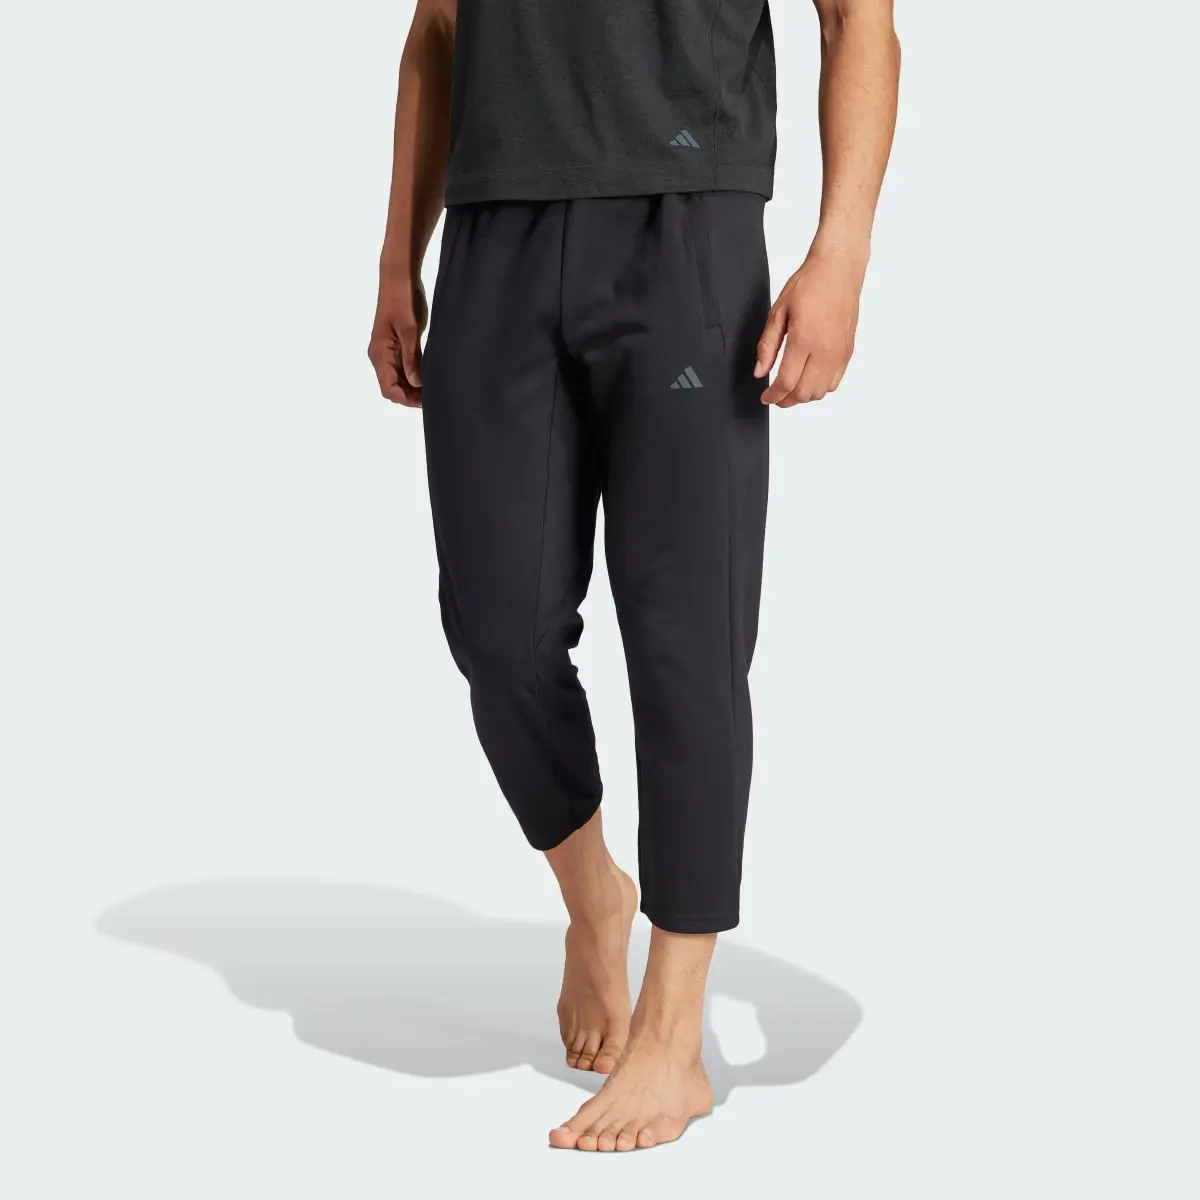 Adidas Pantaloni da yoga Training 7/8. 1